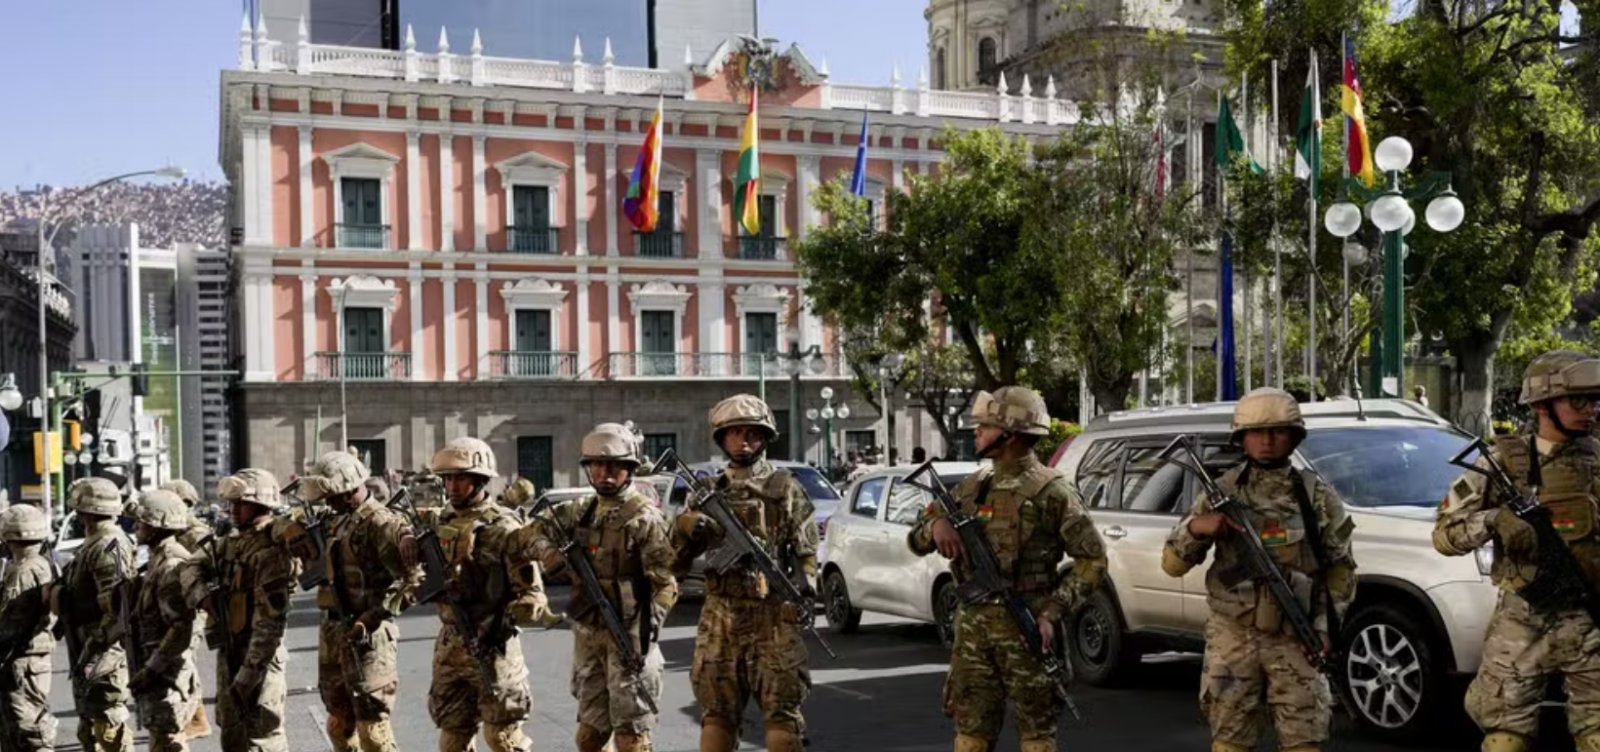 Militares cercam sede do governo na Bolívia e presidente denúncia tentativa de golpe